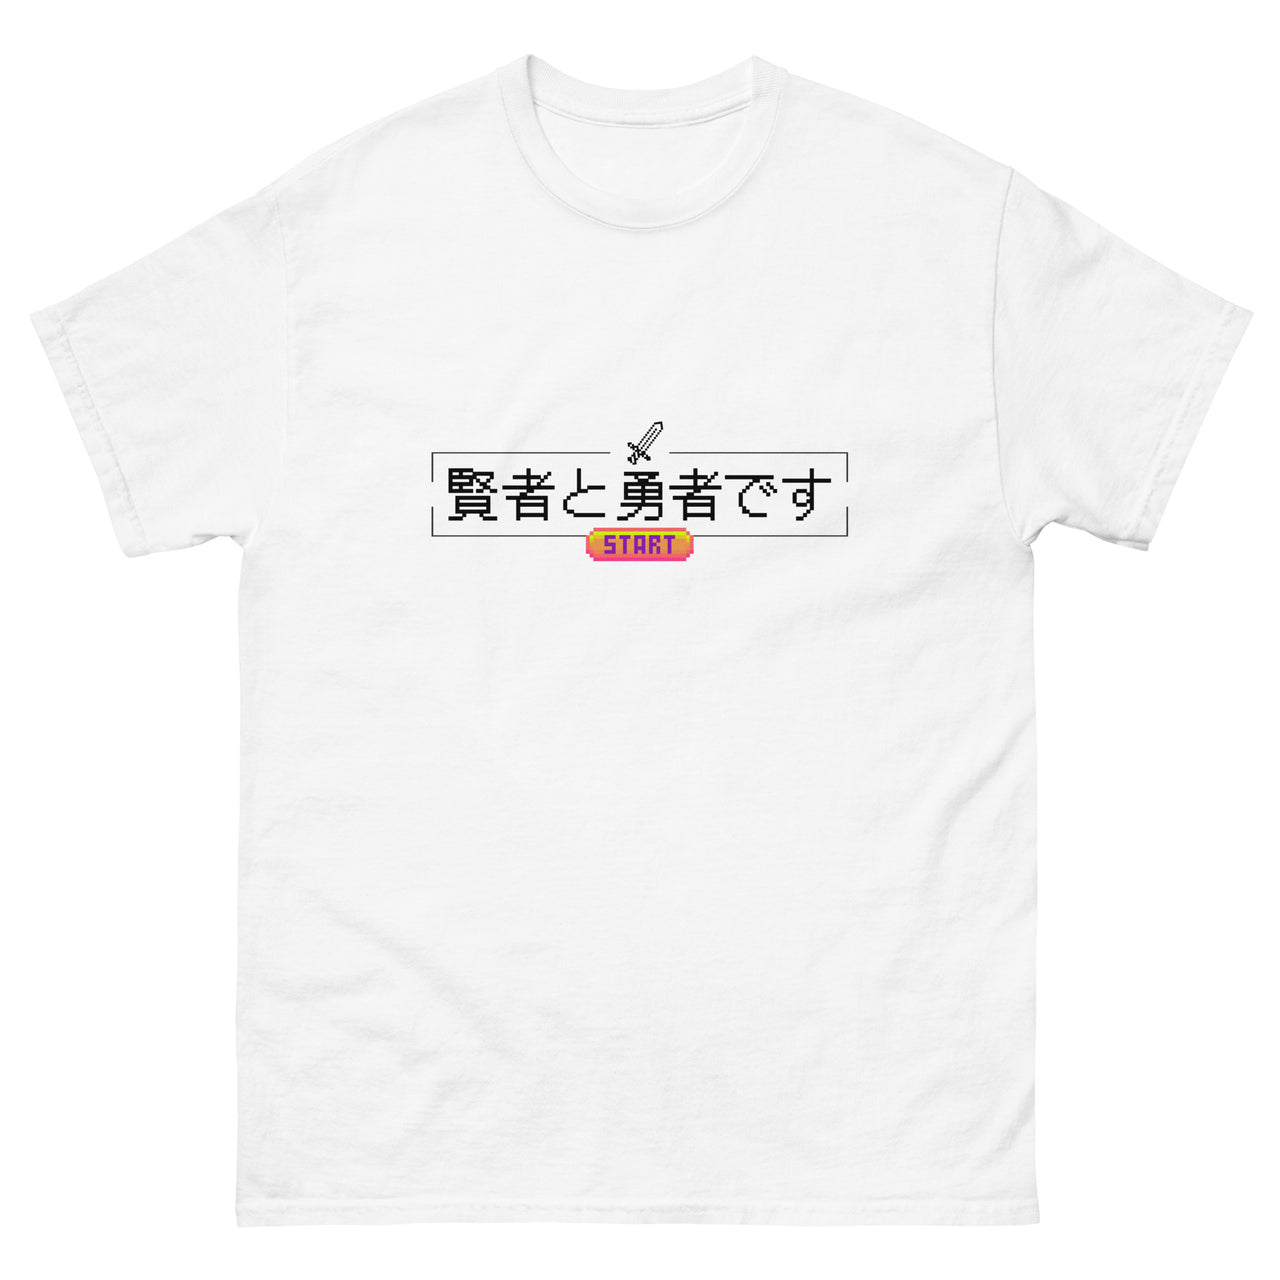 Press Start Wise Hero Short-Sleeve Unisex Japanese-Themed T-Shirt